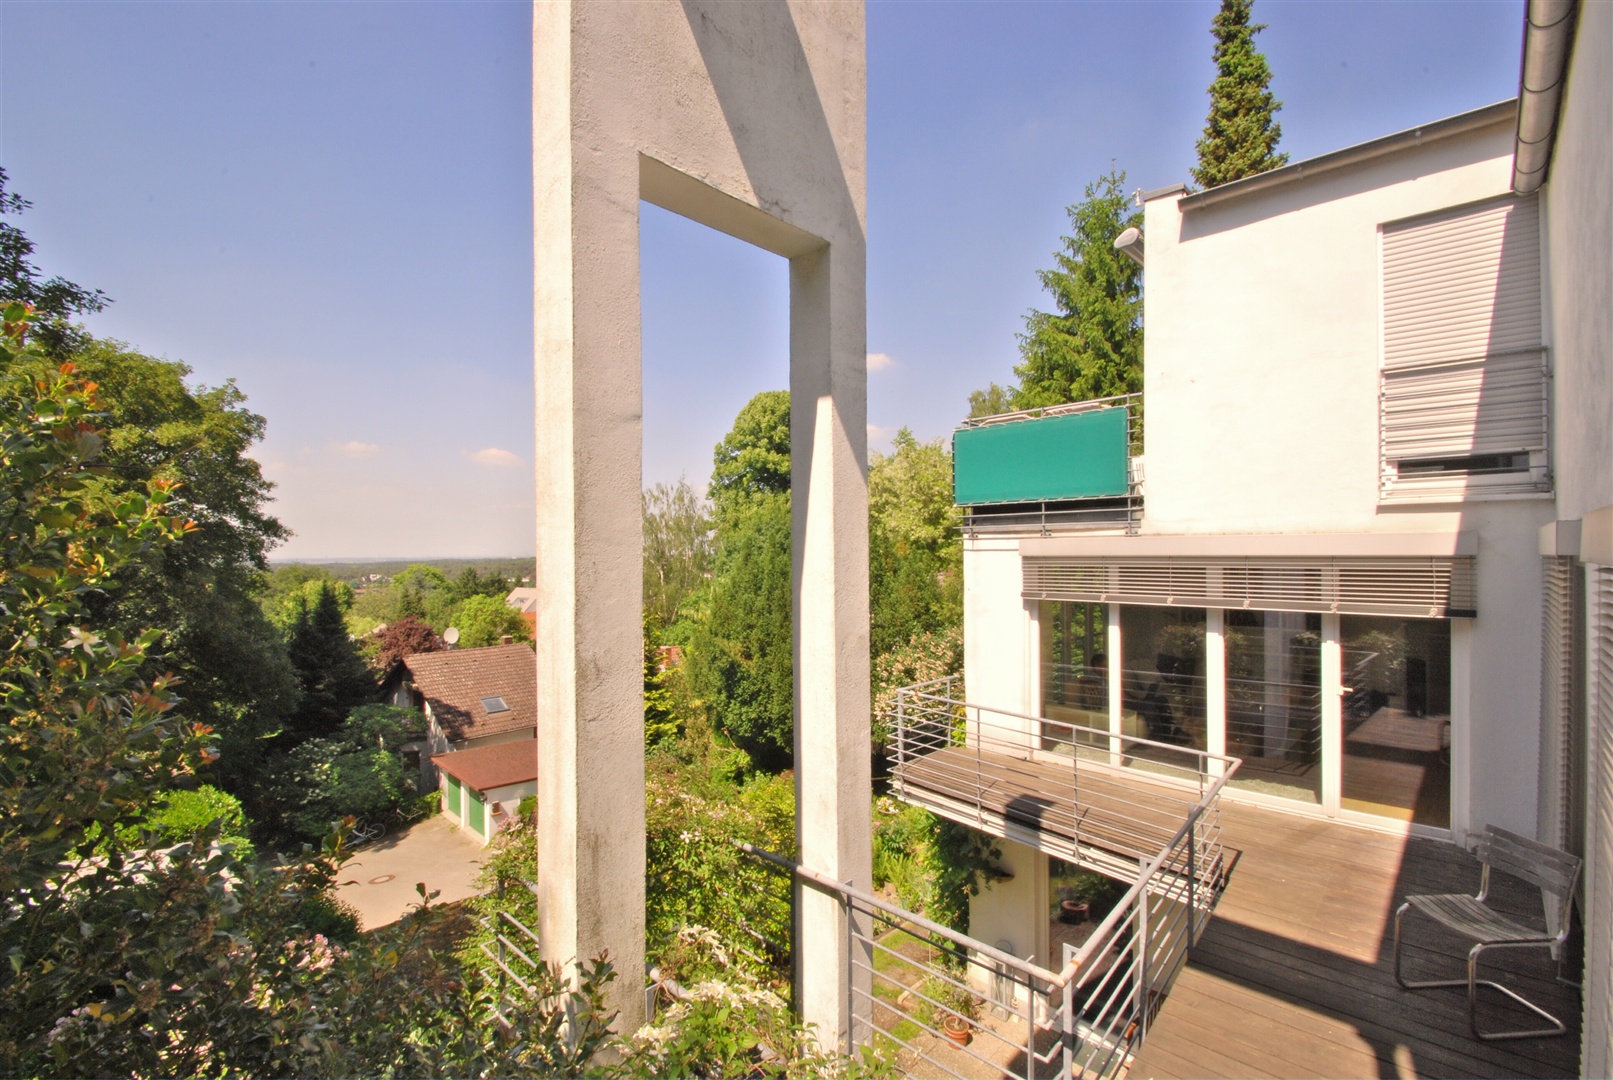  - Jugenheim, moderne Villa in Bestlage mit Blick (Exposé 1116)